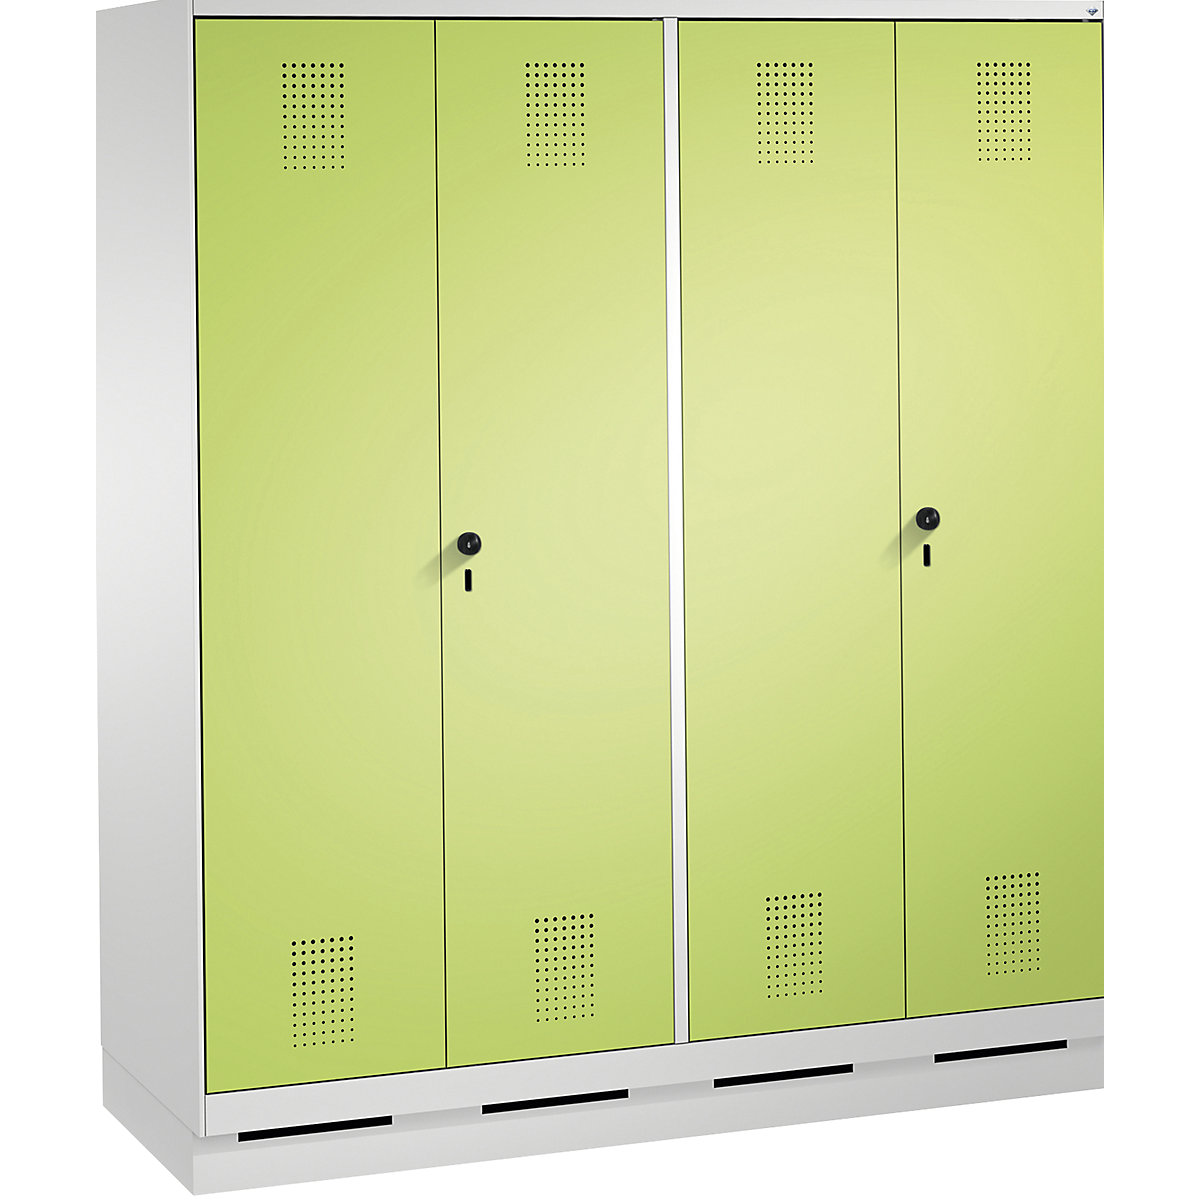 EVOLO öltözőszekrény, egymásra csukódó ajtók – C+P, 4 fülke, fülkeszélesség 400 mm, lábazattal, világosszürke / viridinzöld-4